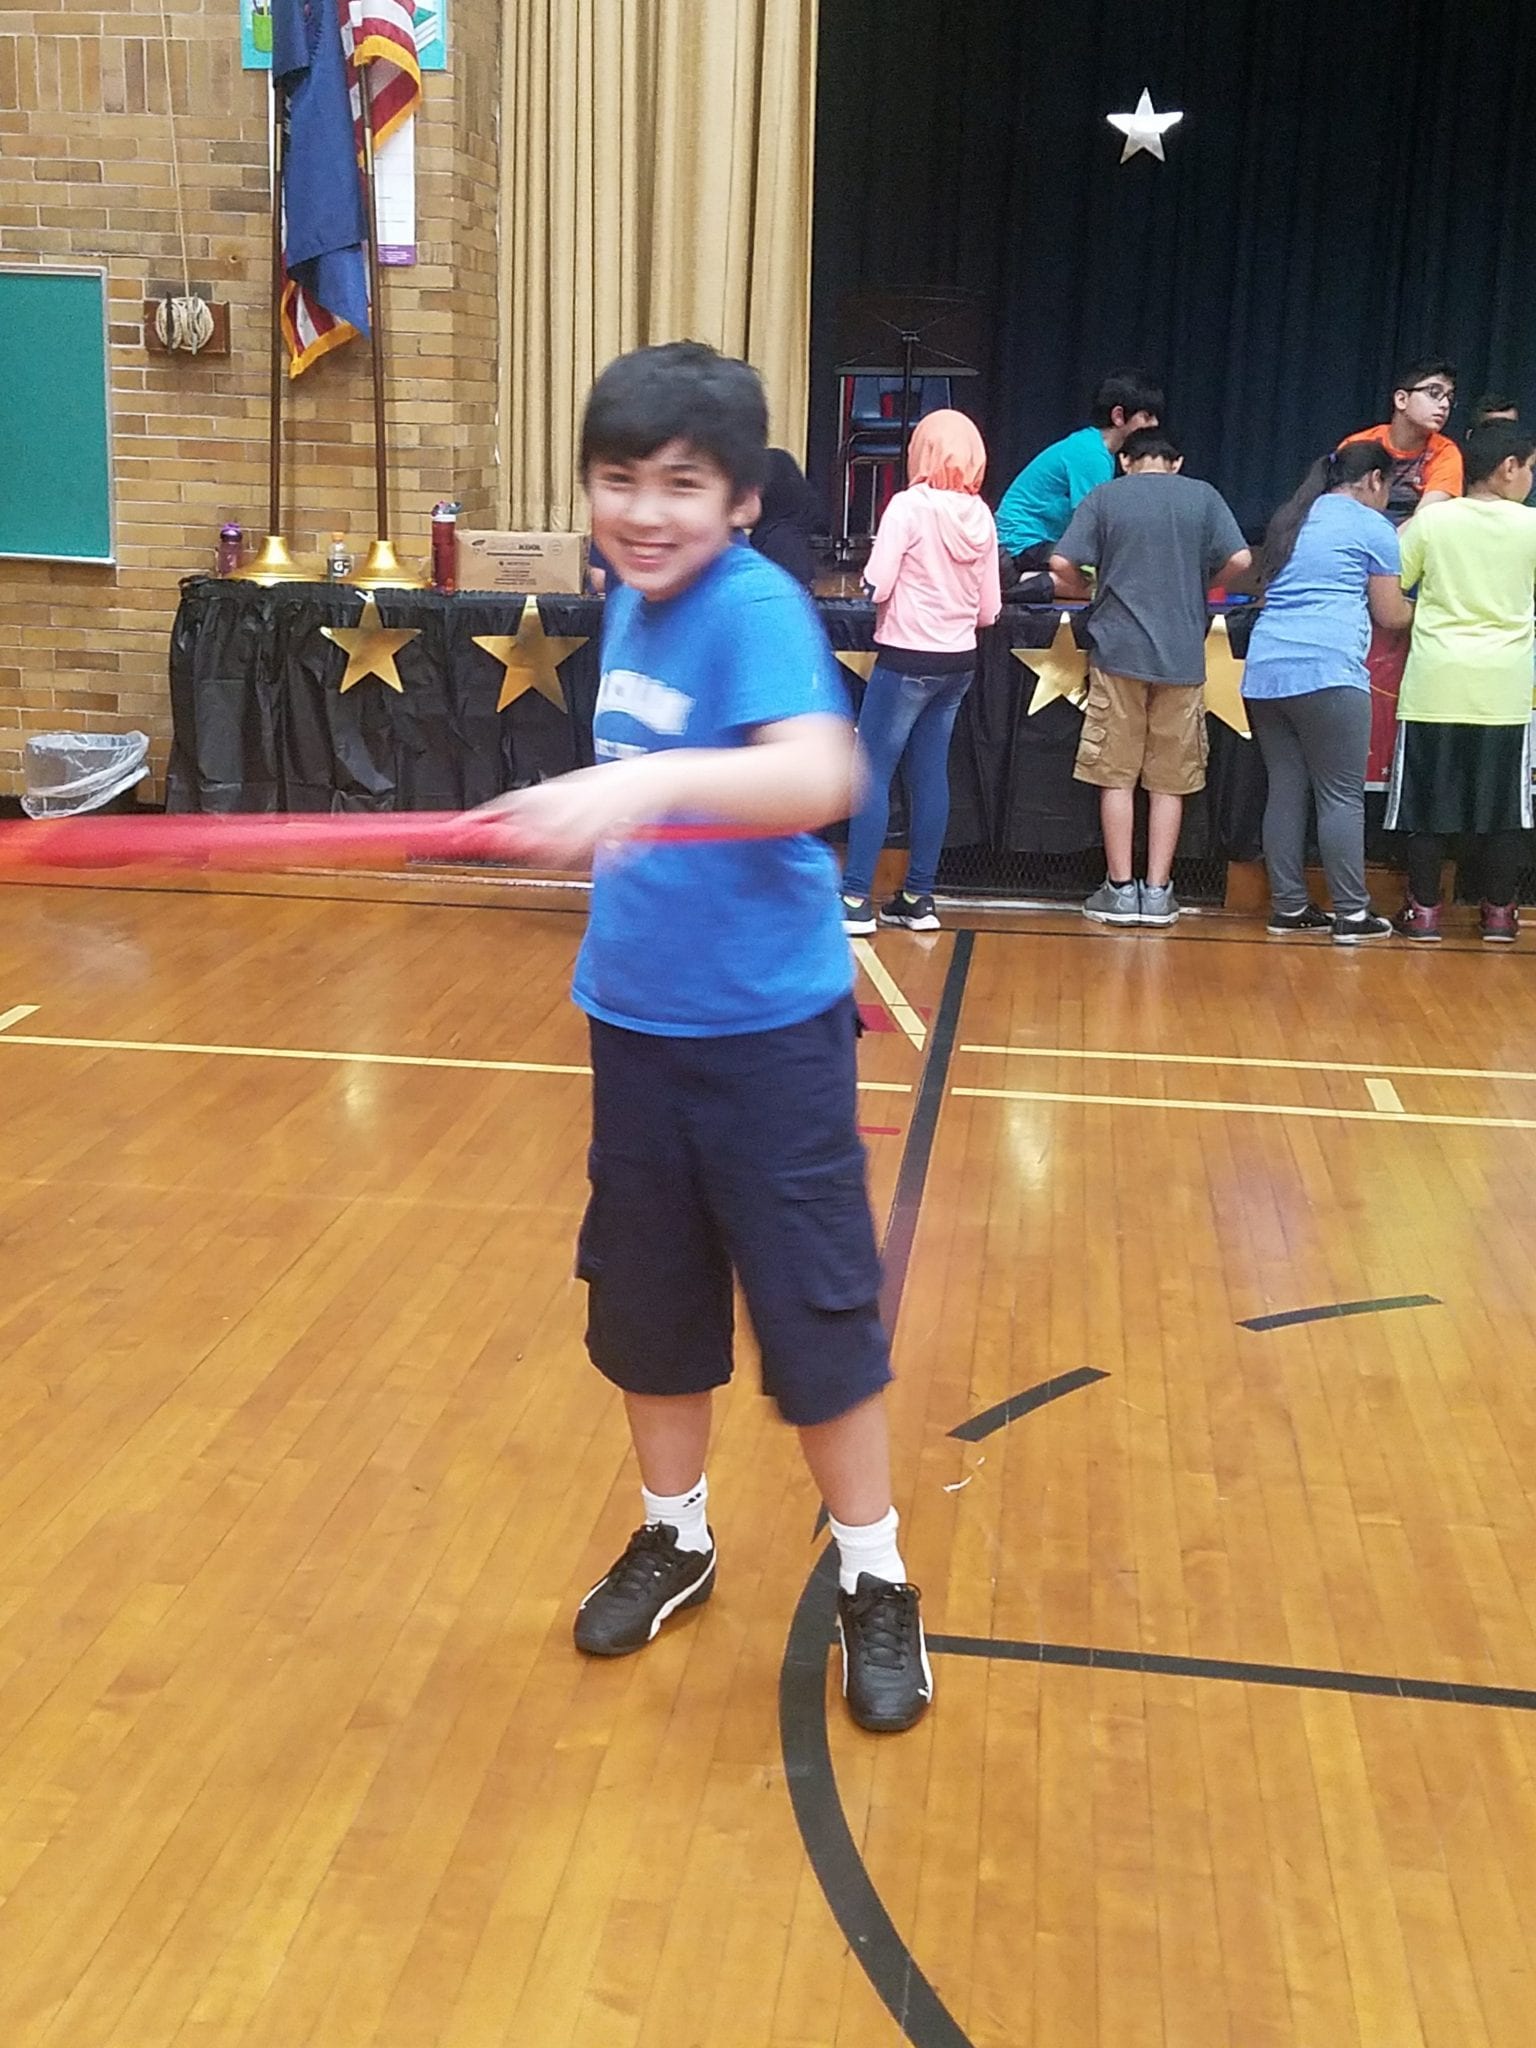 5th grader hula hooping